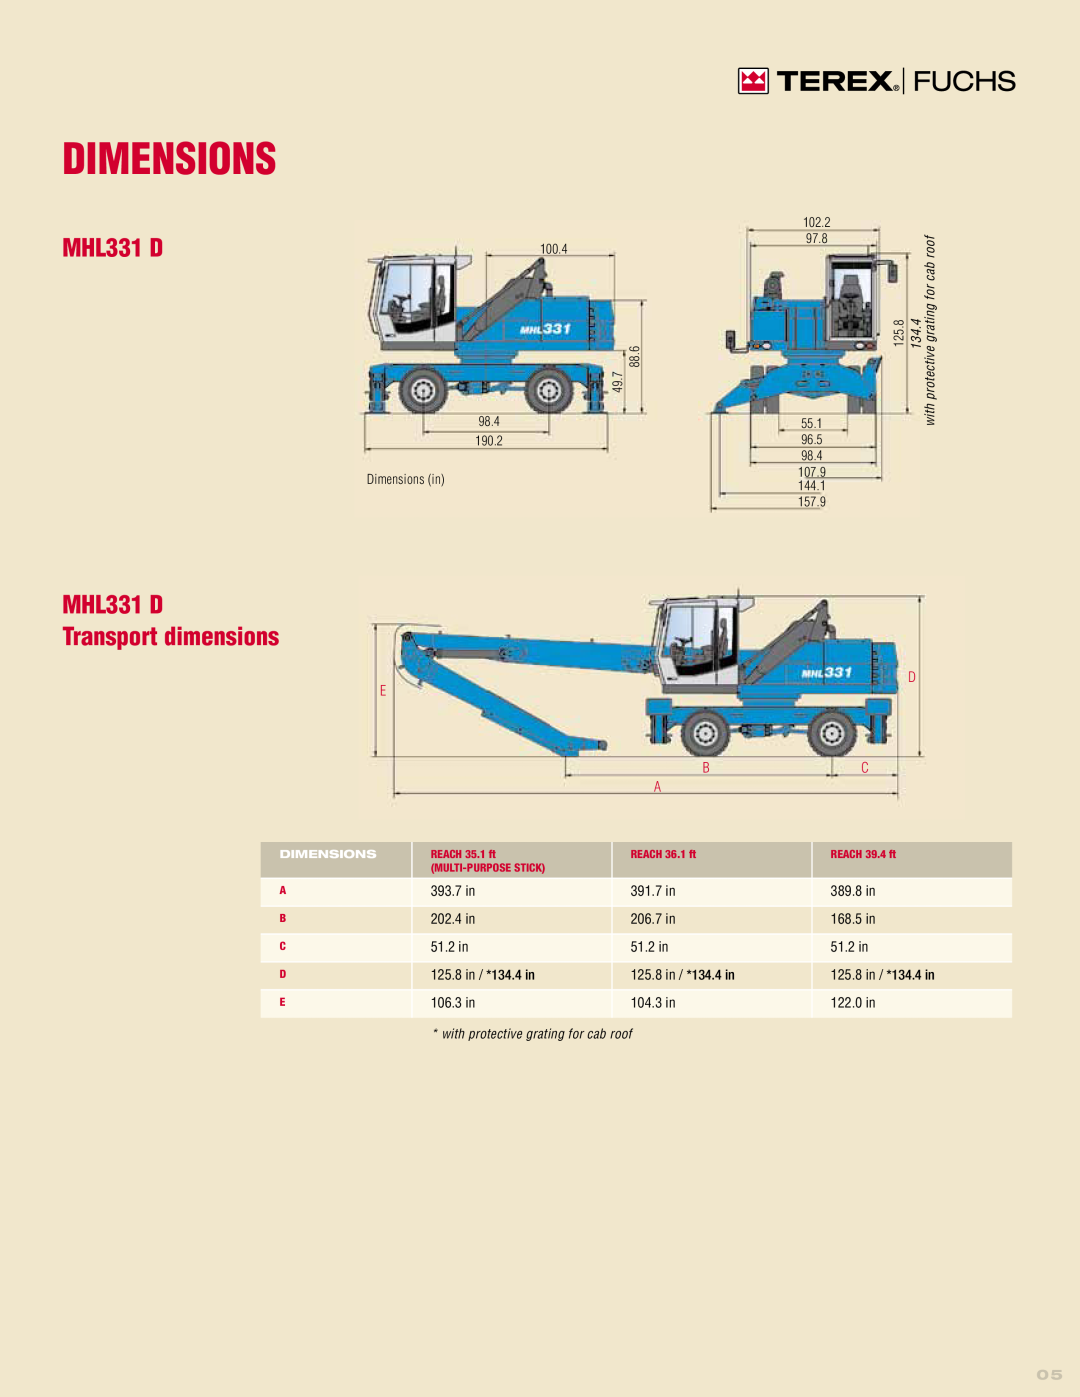 Interex MHL331D manual Dimensions, MHL331 D Transport dimensions 